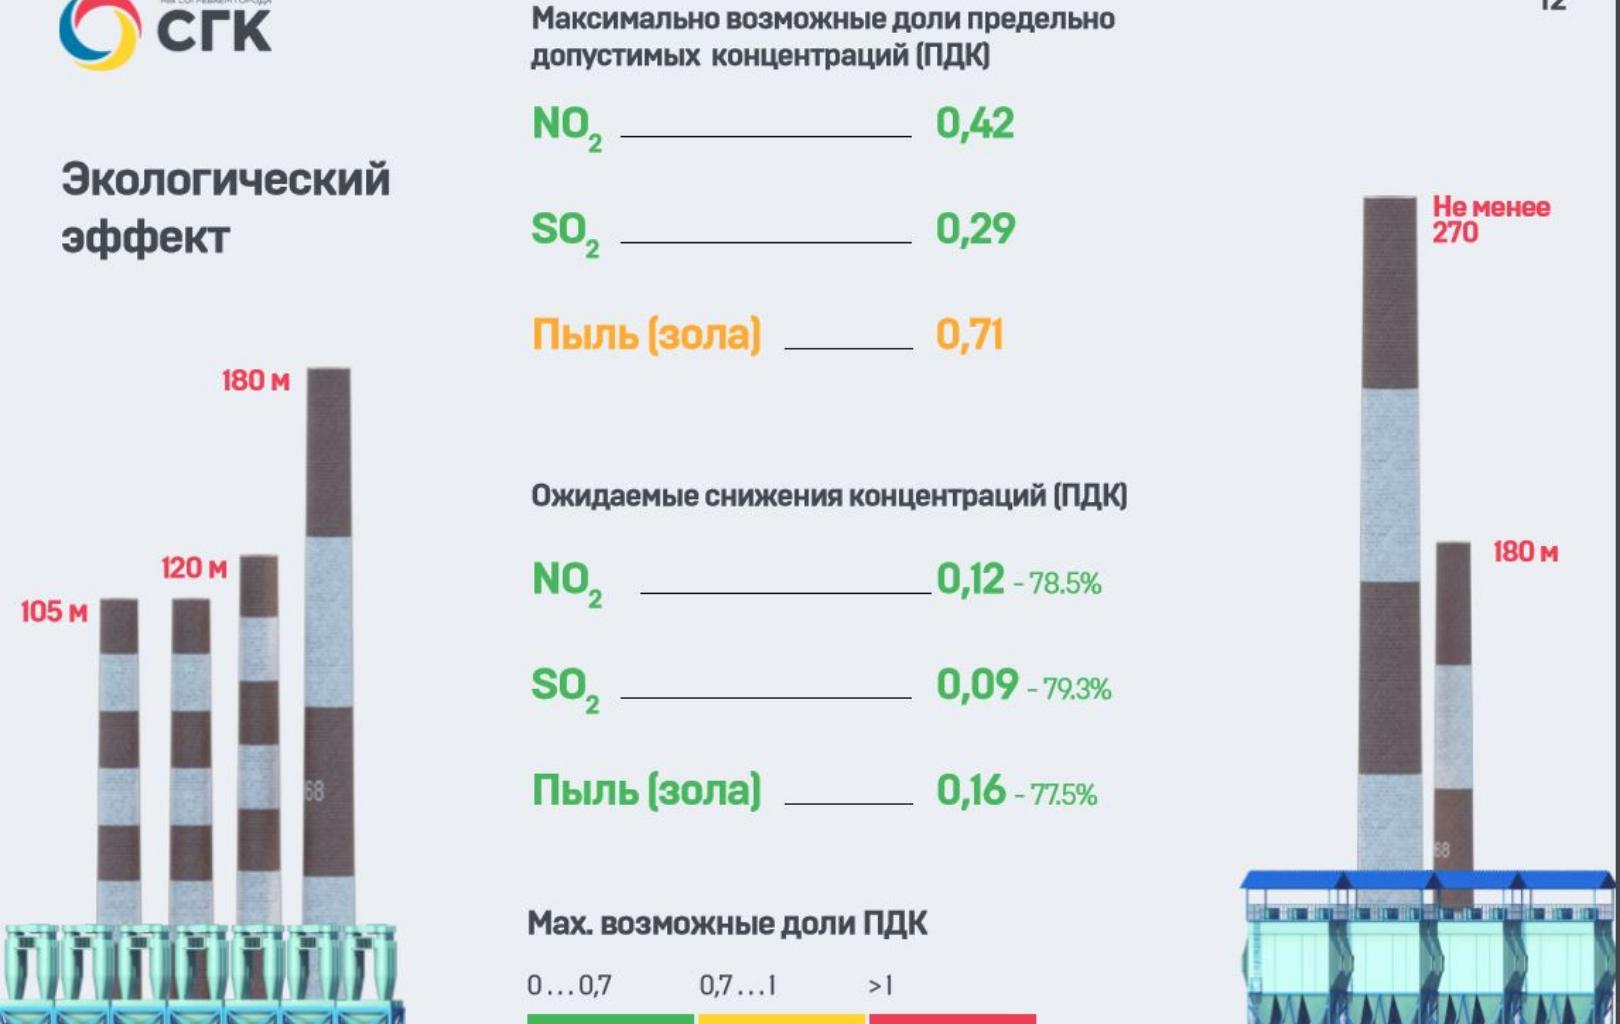 Экологические мероприятия в теплоэнергетике г. Красноярска на 2018-2021 годы